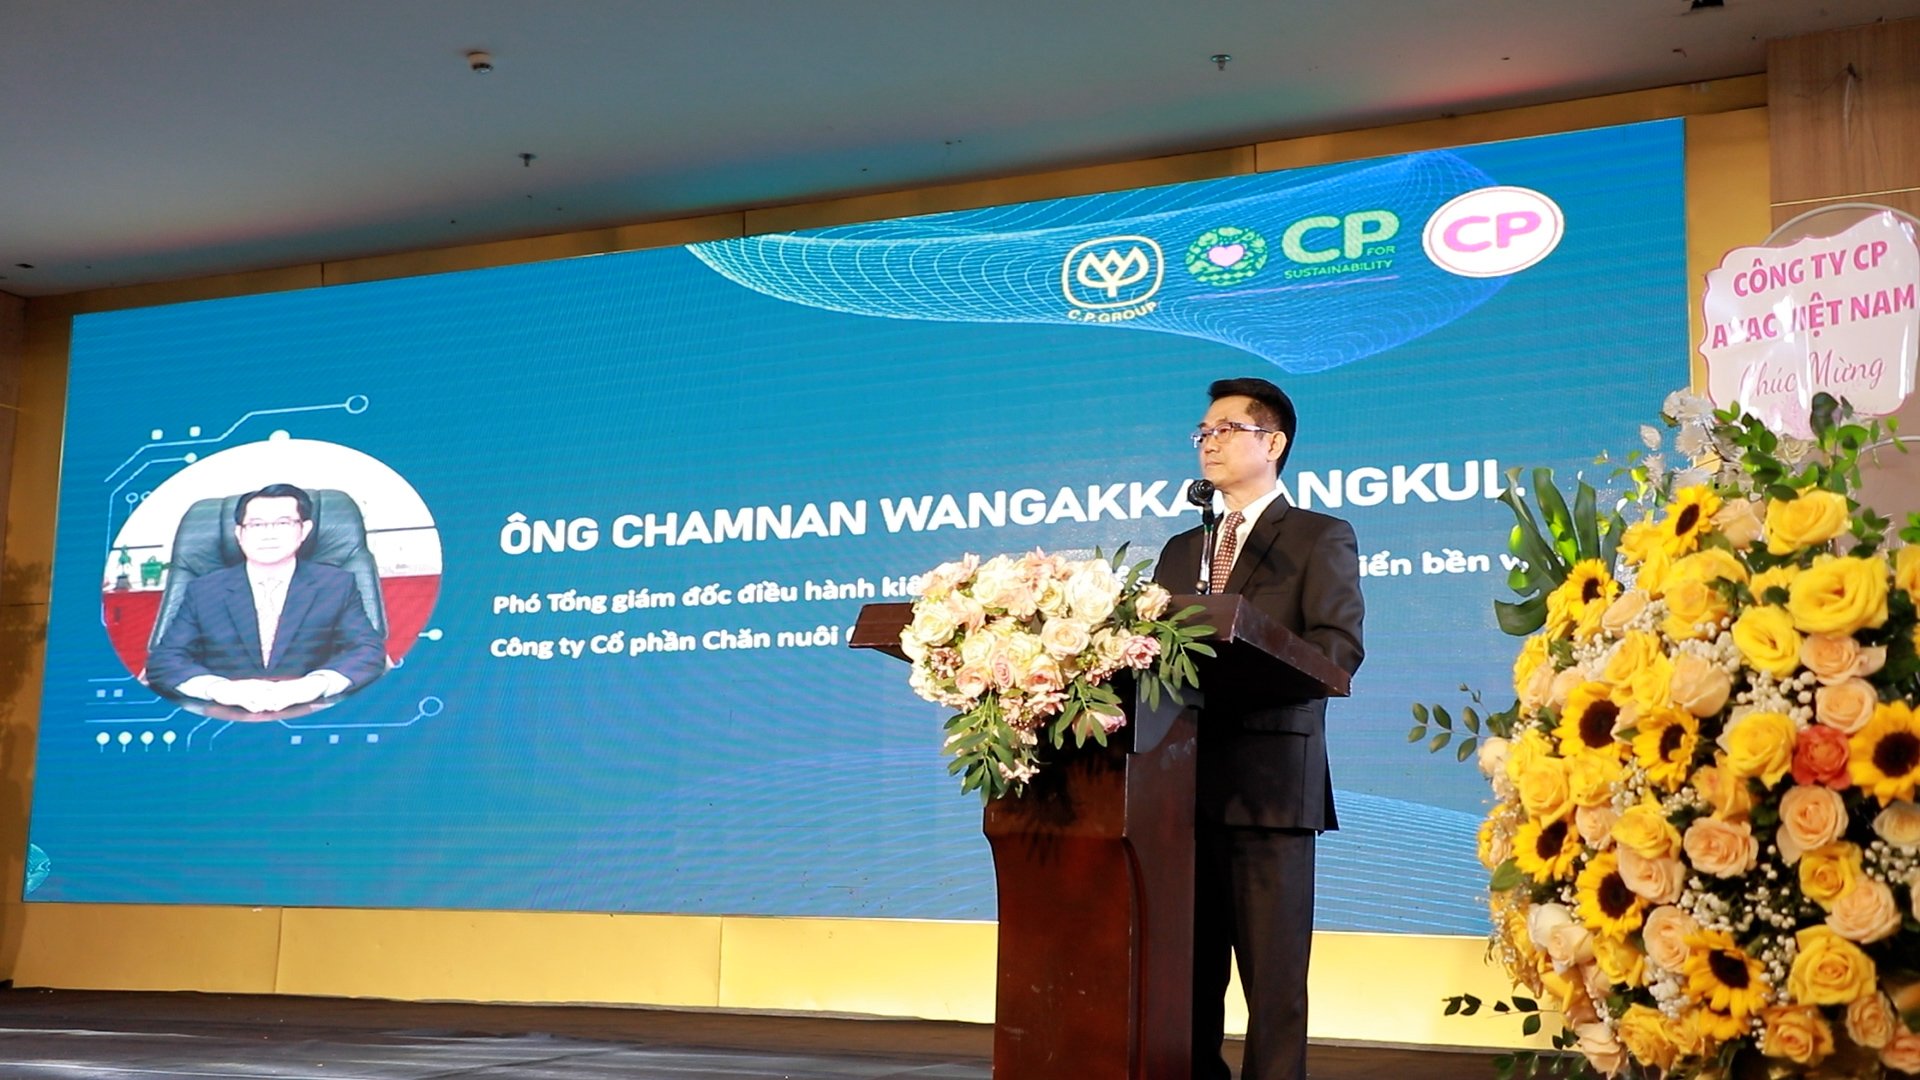 C.P. Việt Nam tổ chức thành công &quot;Hội nghị phát triển tiềm năng nhà cung cấp&quot; tại khu vực phía Bắc - Ảnh 2.